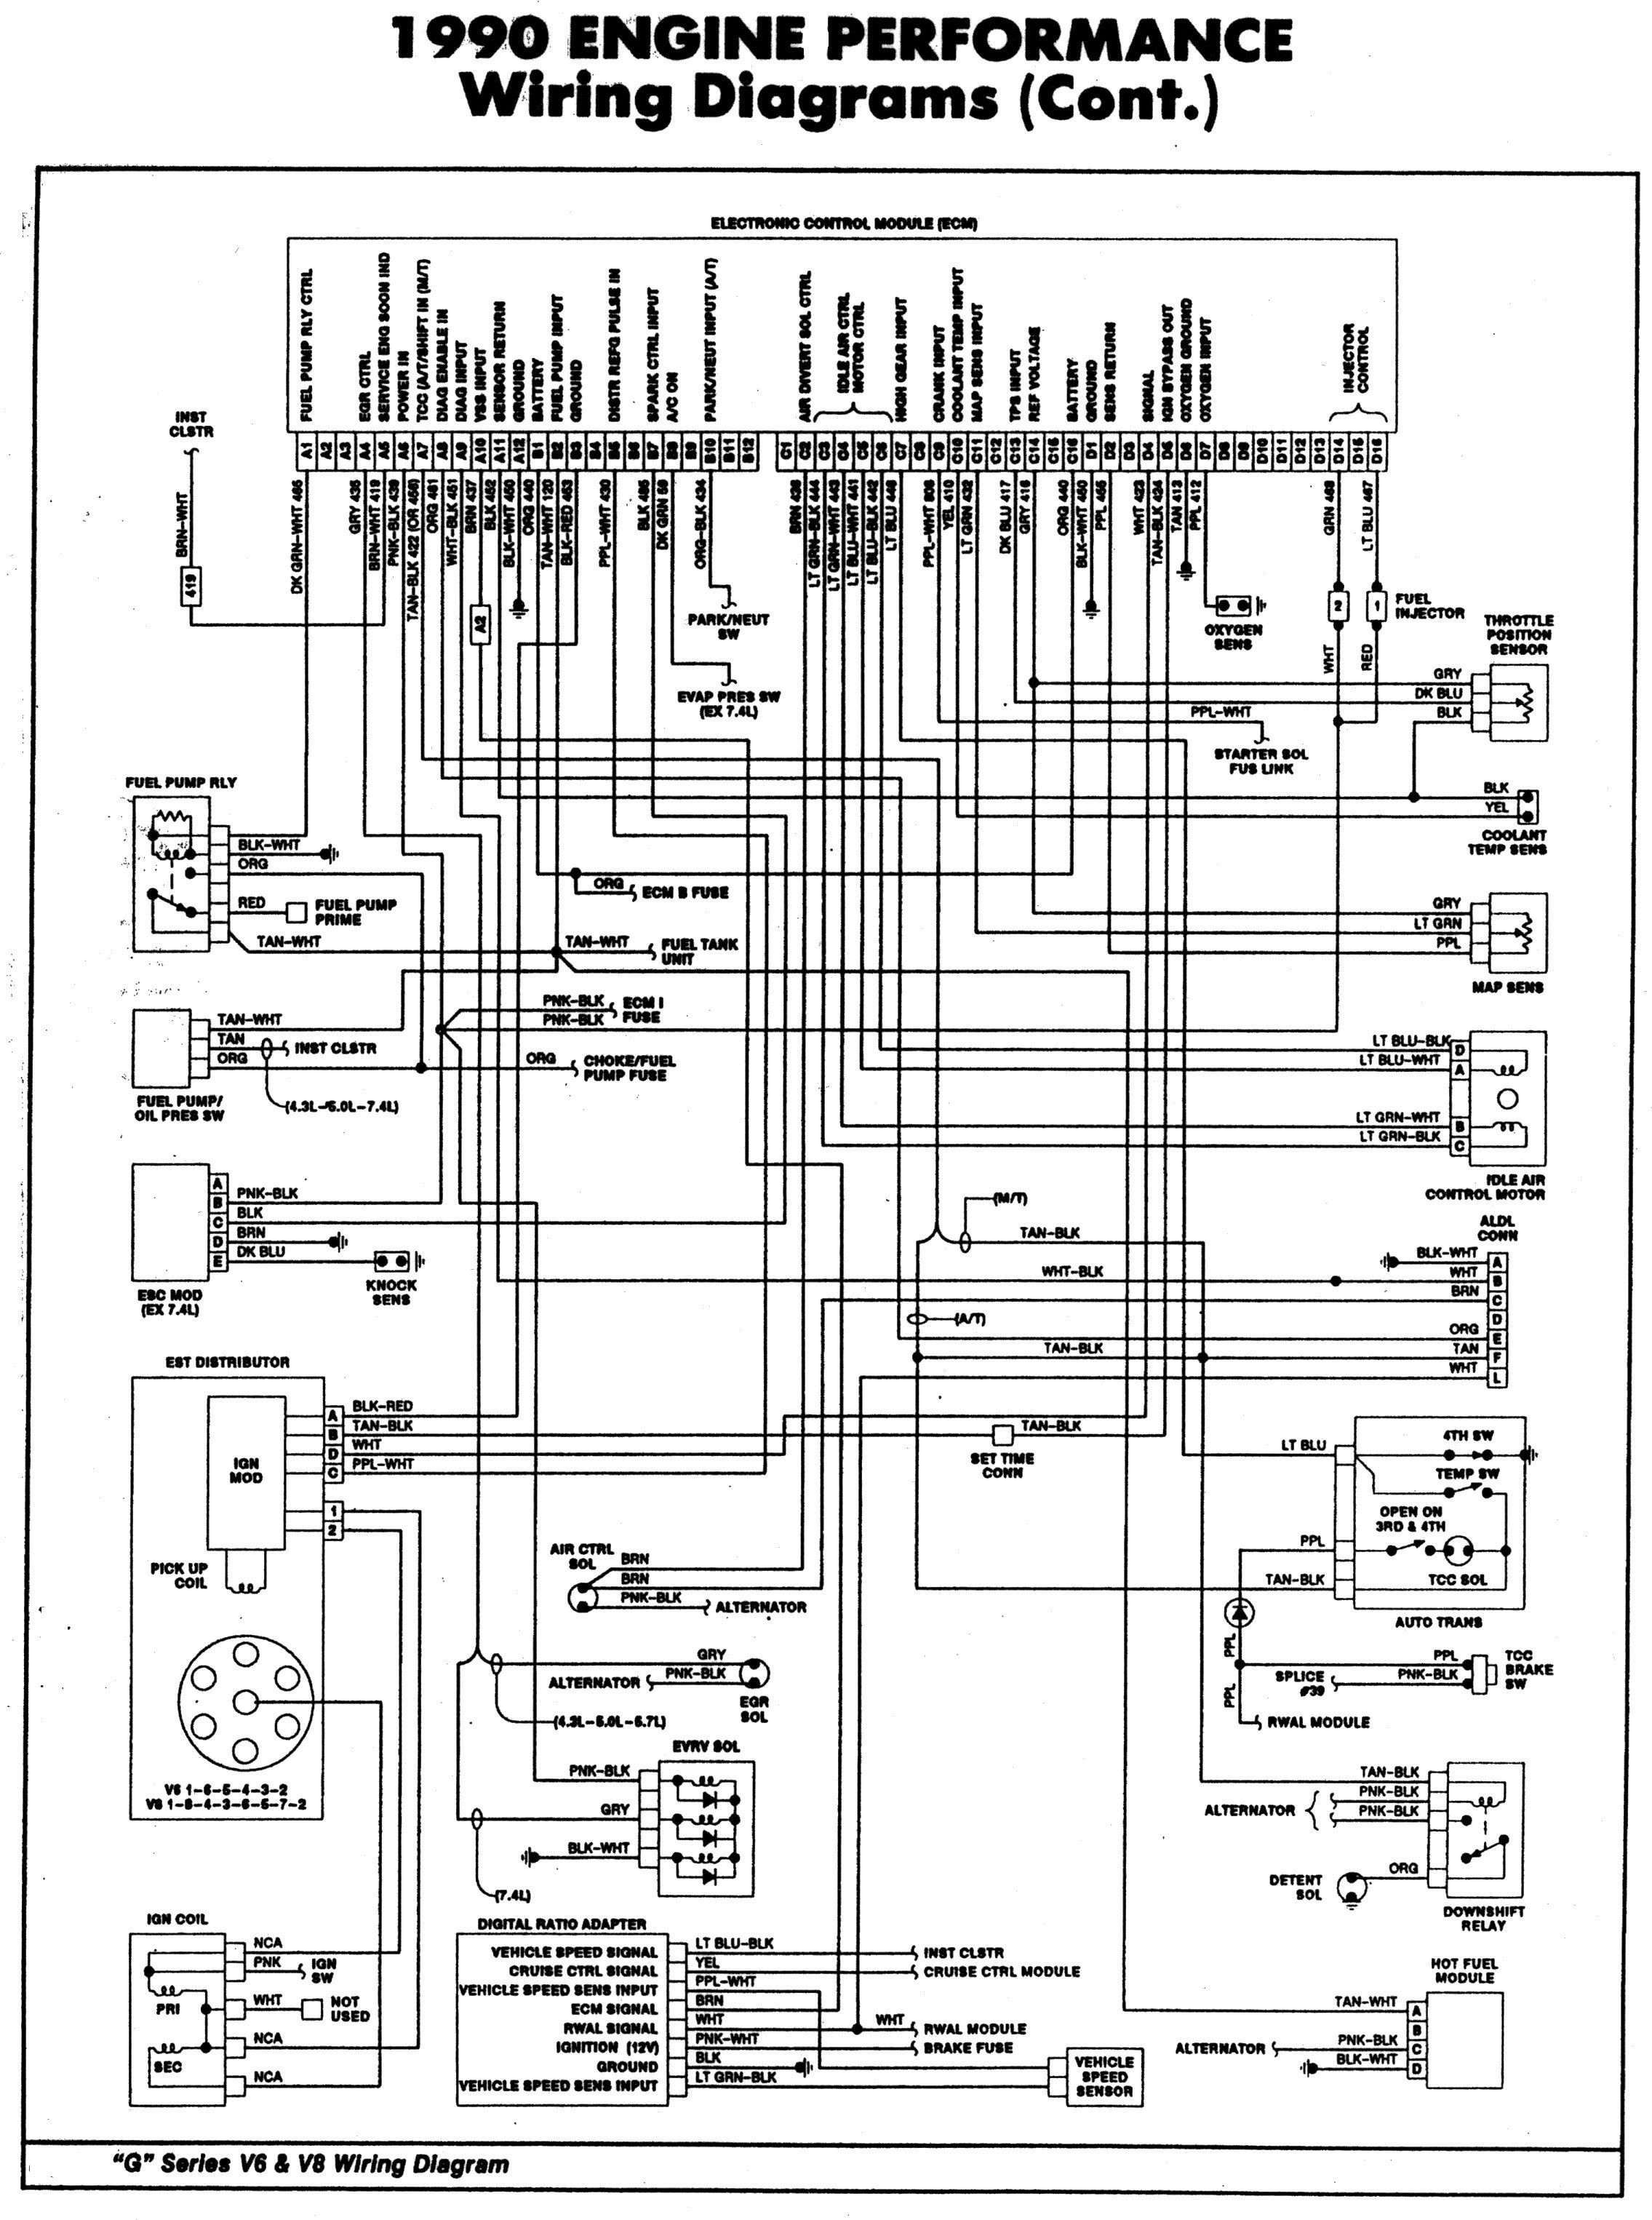 Chevy 350 Engine Diagram 1500 Chevy Engine Diagram Simple Guide About Wiring Diagram Of Chevy 350 Engine Diagram